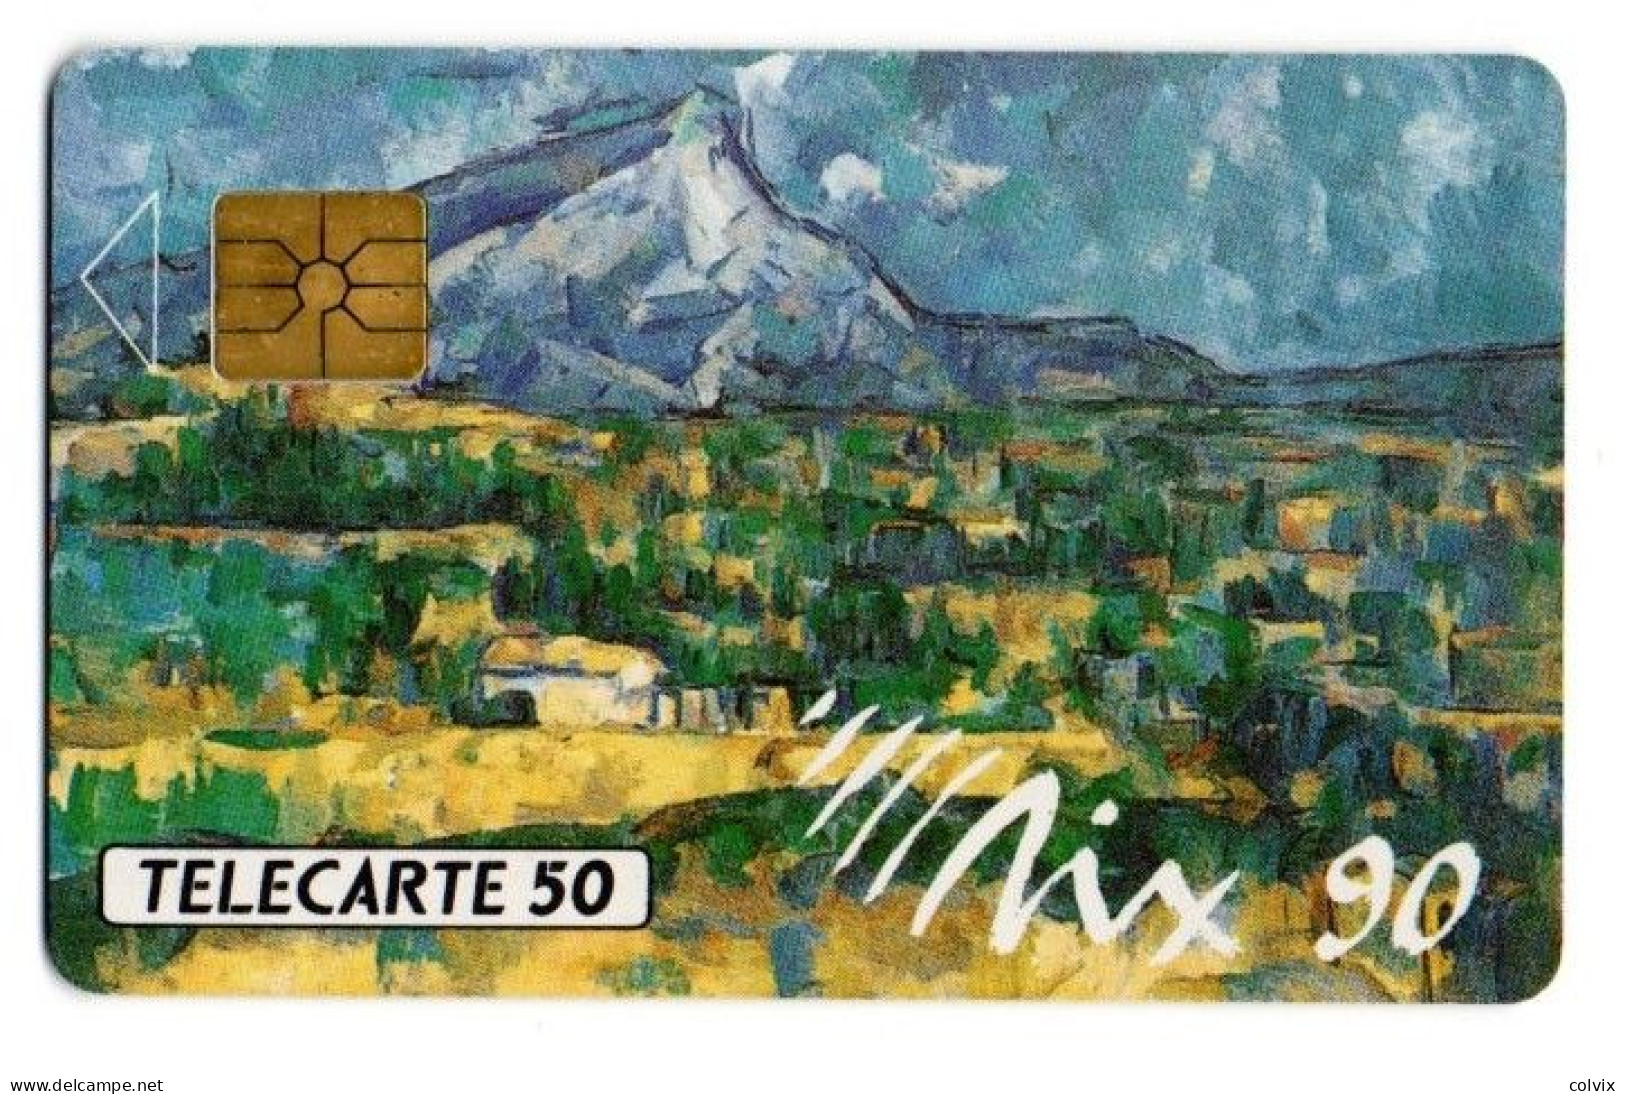 FRANCE TELECARTE D420A AIX90 50U 1000 Ex Date12/1990 Paul Cézanne La Montagne Sainte Victoire - Telefoonkaarten Voor Particulieren